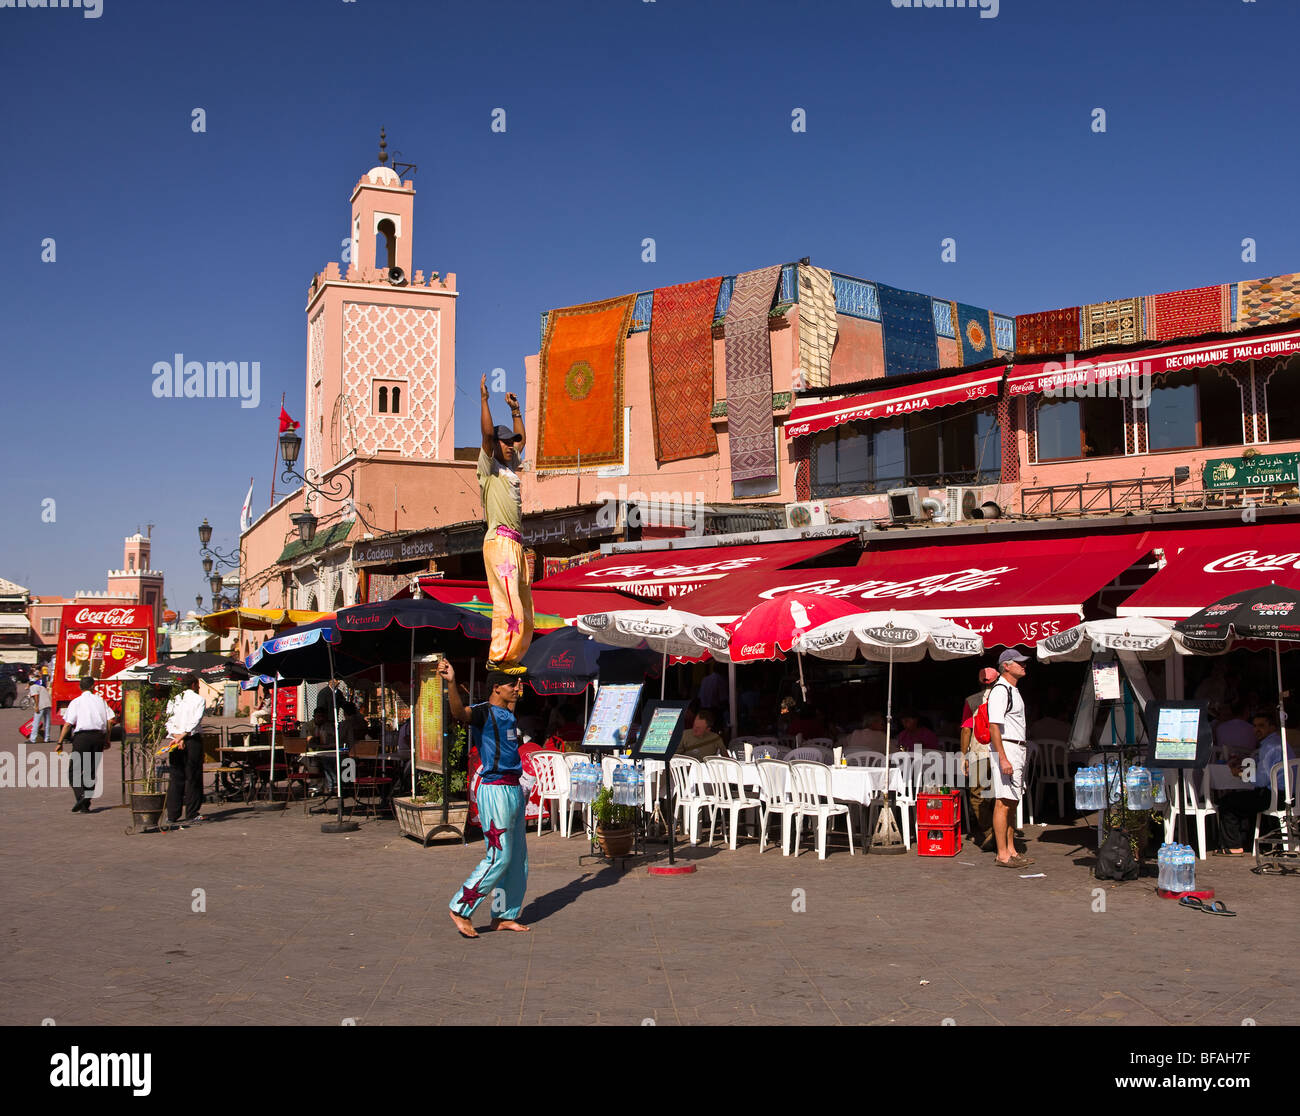 Marrakesch, Marokko - Akrobaten Balance vor Café, Djemaa el-Fna Hauptplatz in der Medina. Stockfoto